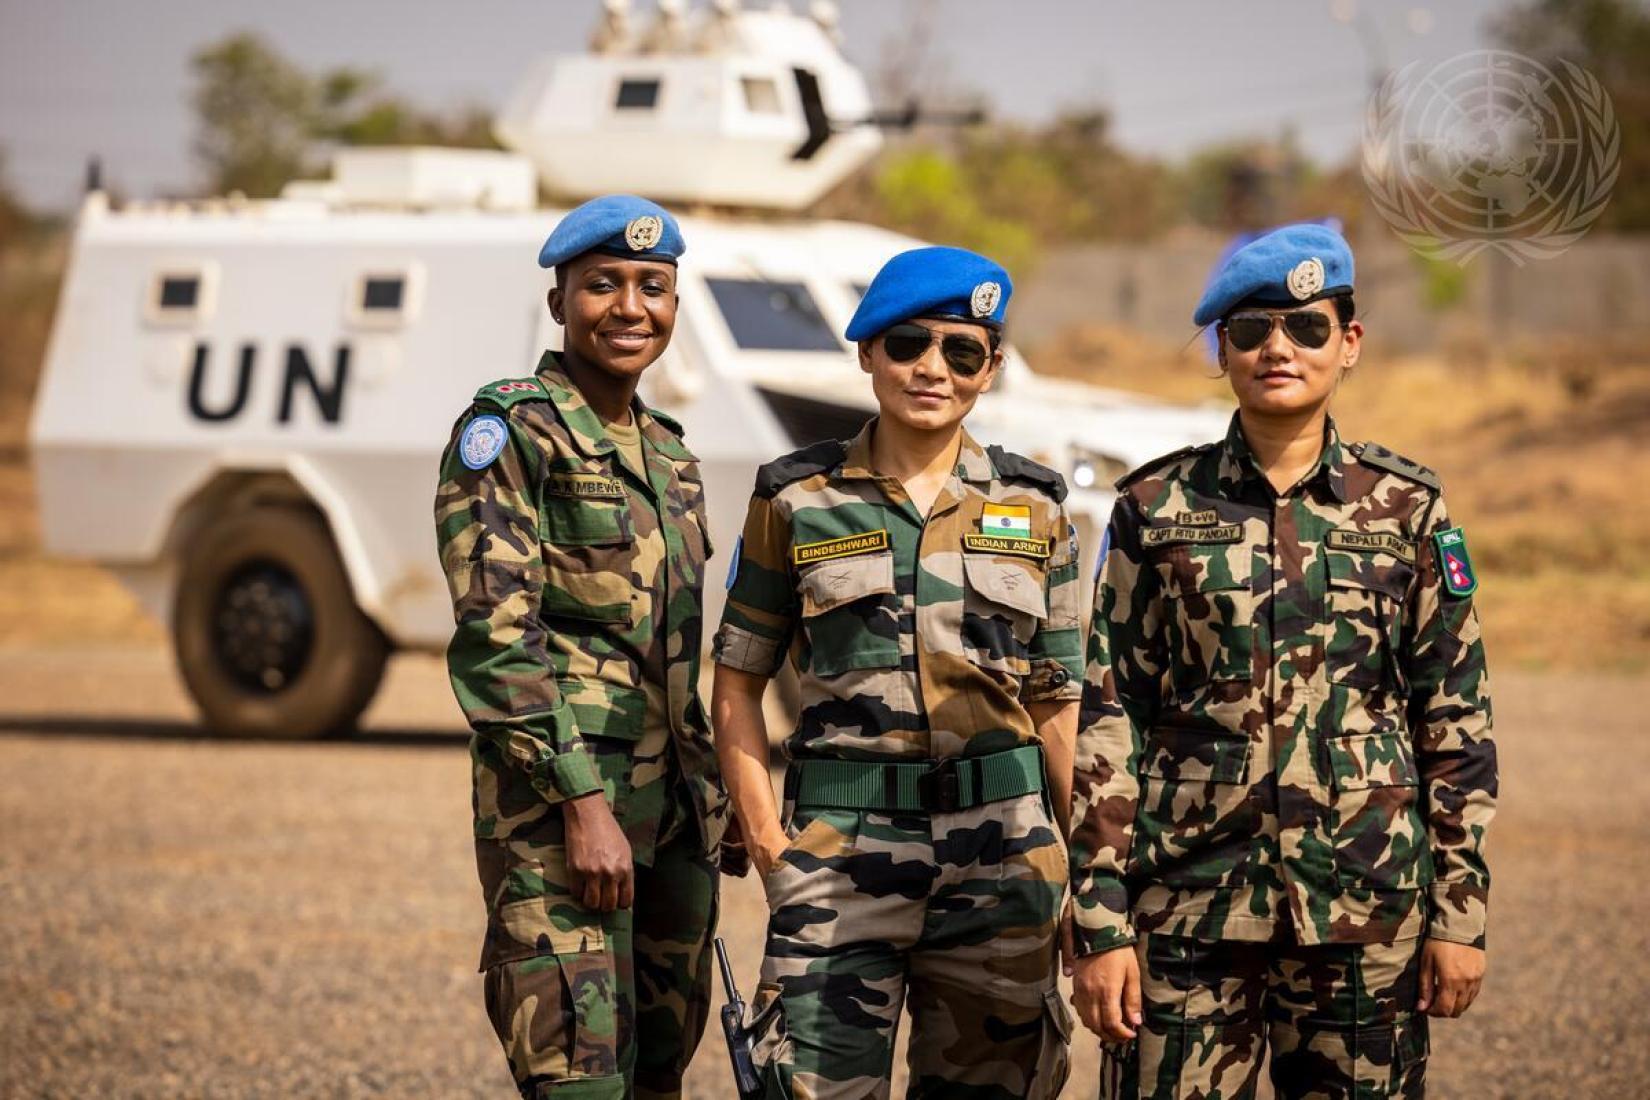 A capitã Atupele Mbewe, do Malaui, a major Bindeshwari, da Índia, e a capitã Ritu Pandey, do Nepal, posam para uma foto no acampamento das Nações Unidas em Juba. A foto foi tirada como parte de uma sessão de fotos com as mulheres das forças de paz que servem na Missão das Nações Unidas no Sudão do Sul (UNMISS), para comemorar o Dia Internacional da Mulher (8 de março).